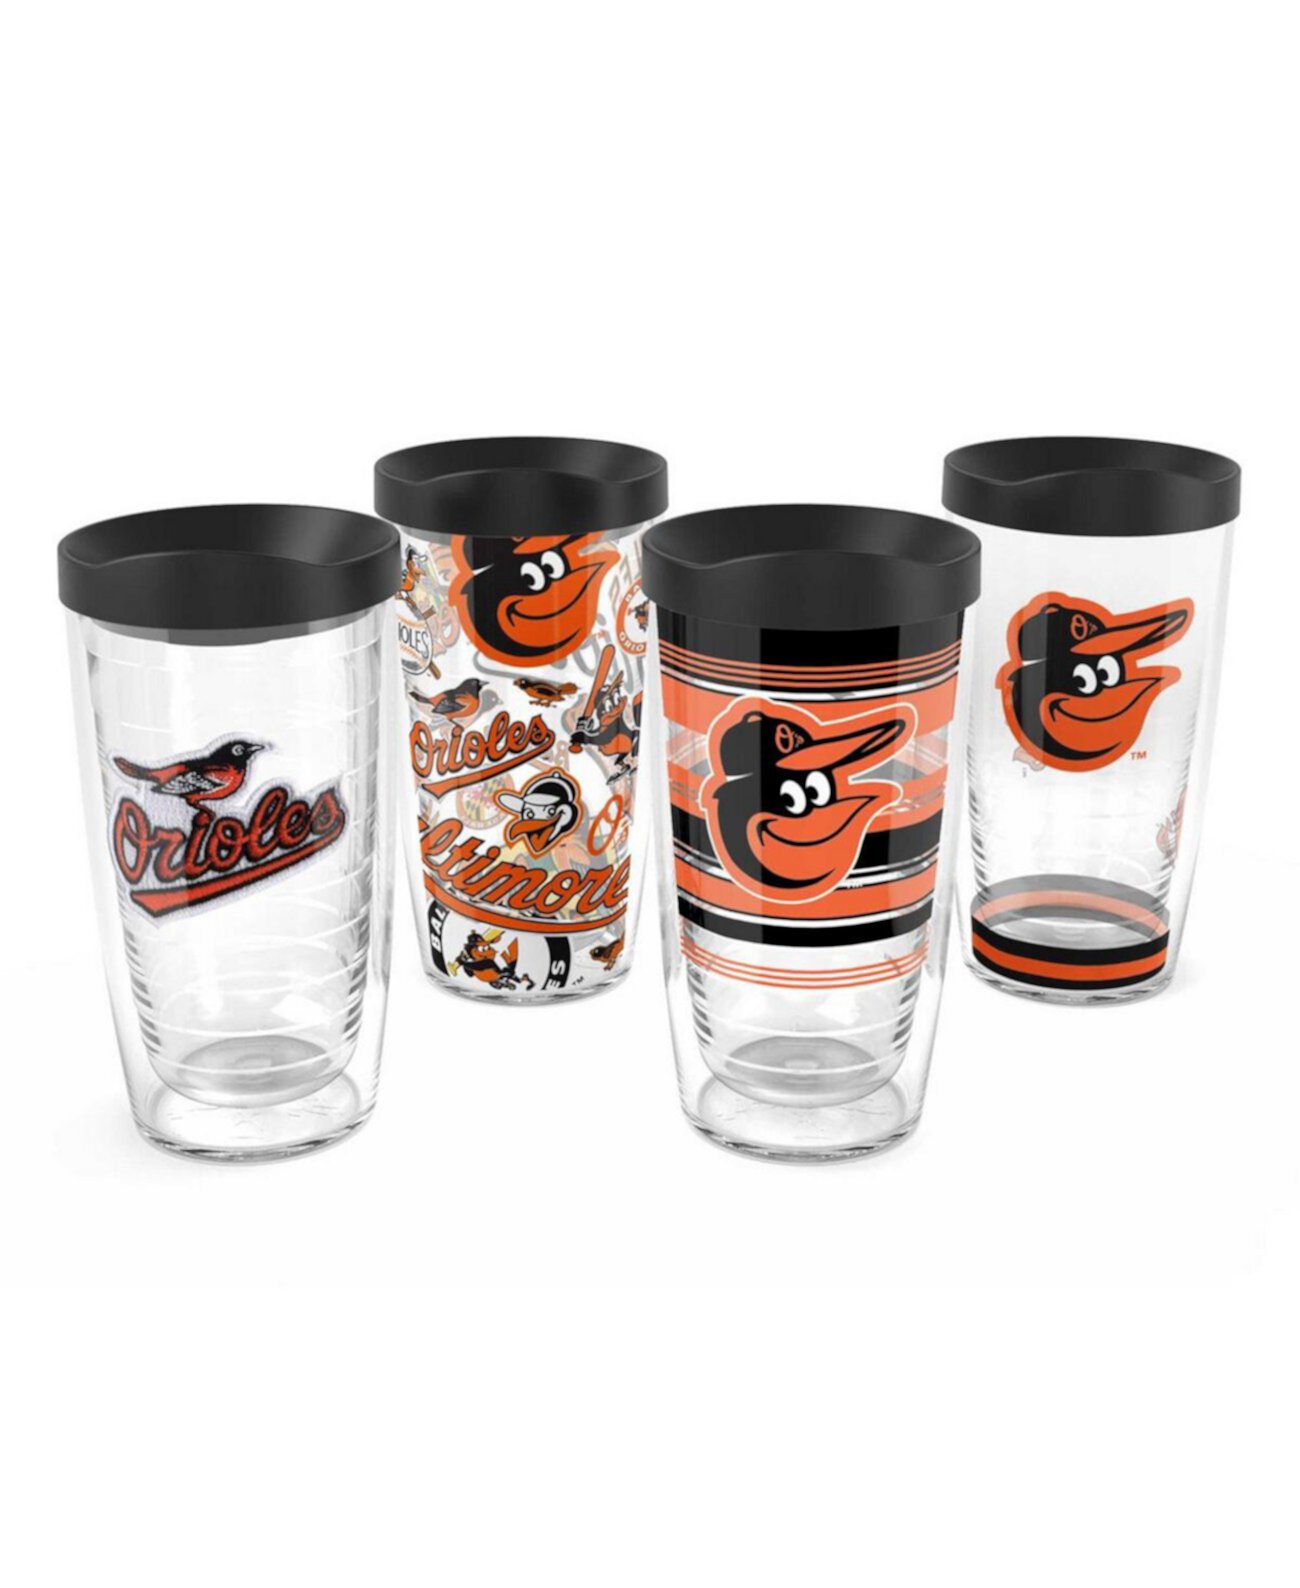 Классический набор из четырех стаканов Baltimore Orioles емкостью 16 унций Tervis